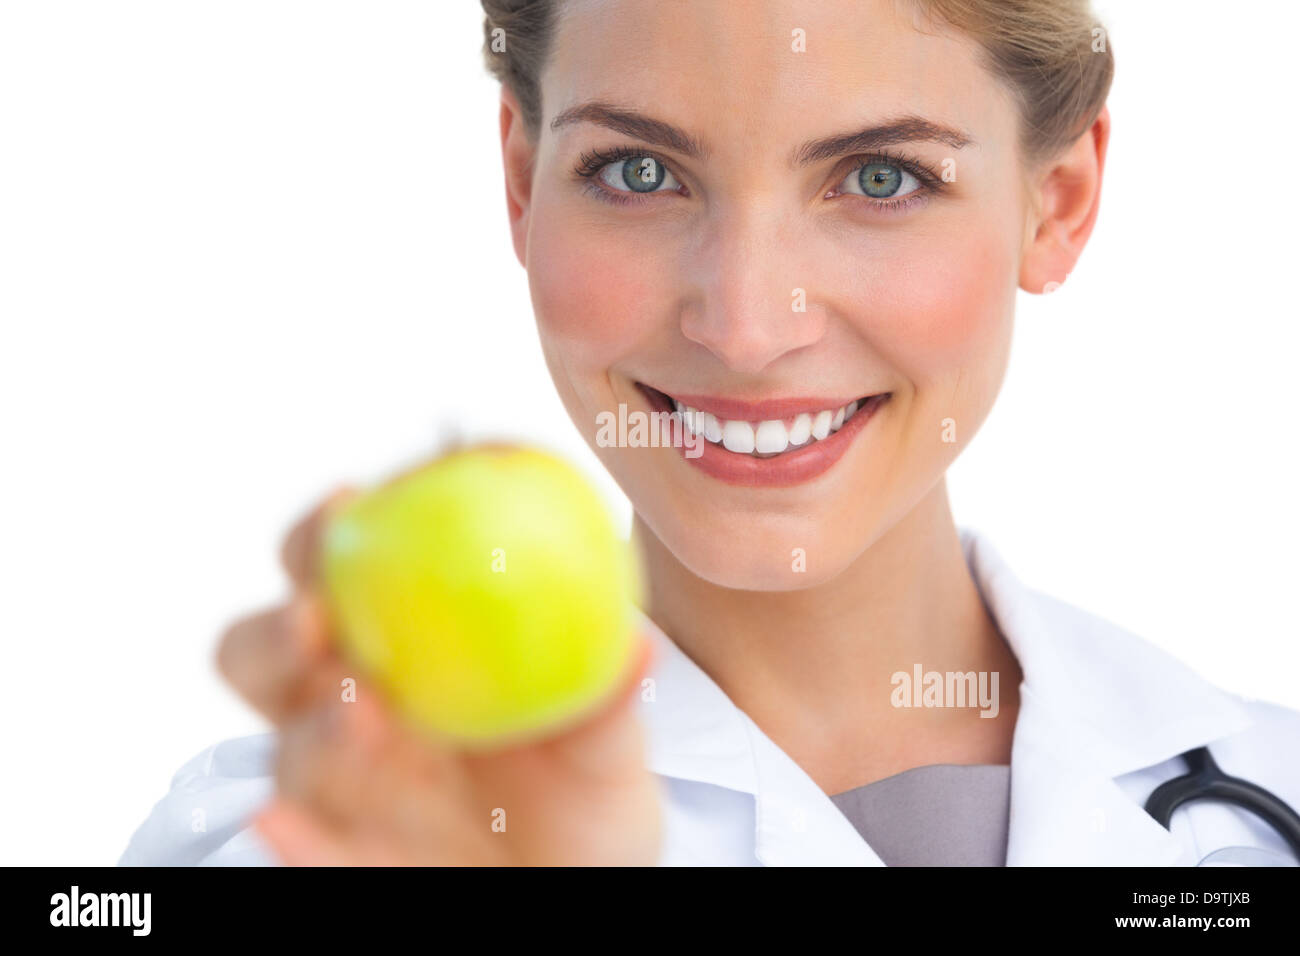 Fokus auf Krankenschwester hält Apfel gedreht Stockfoto